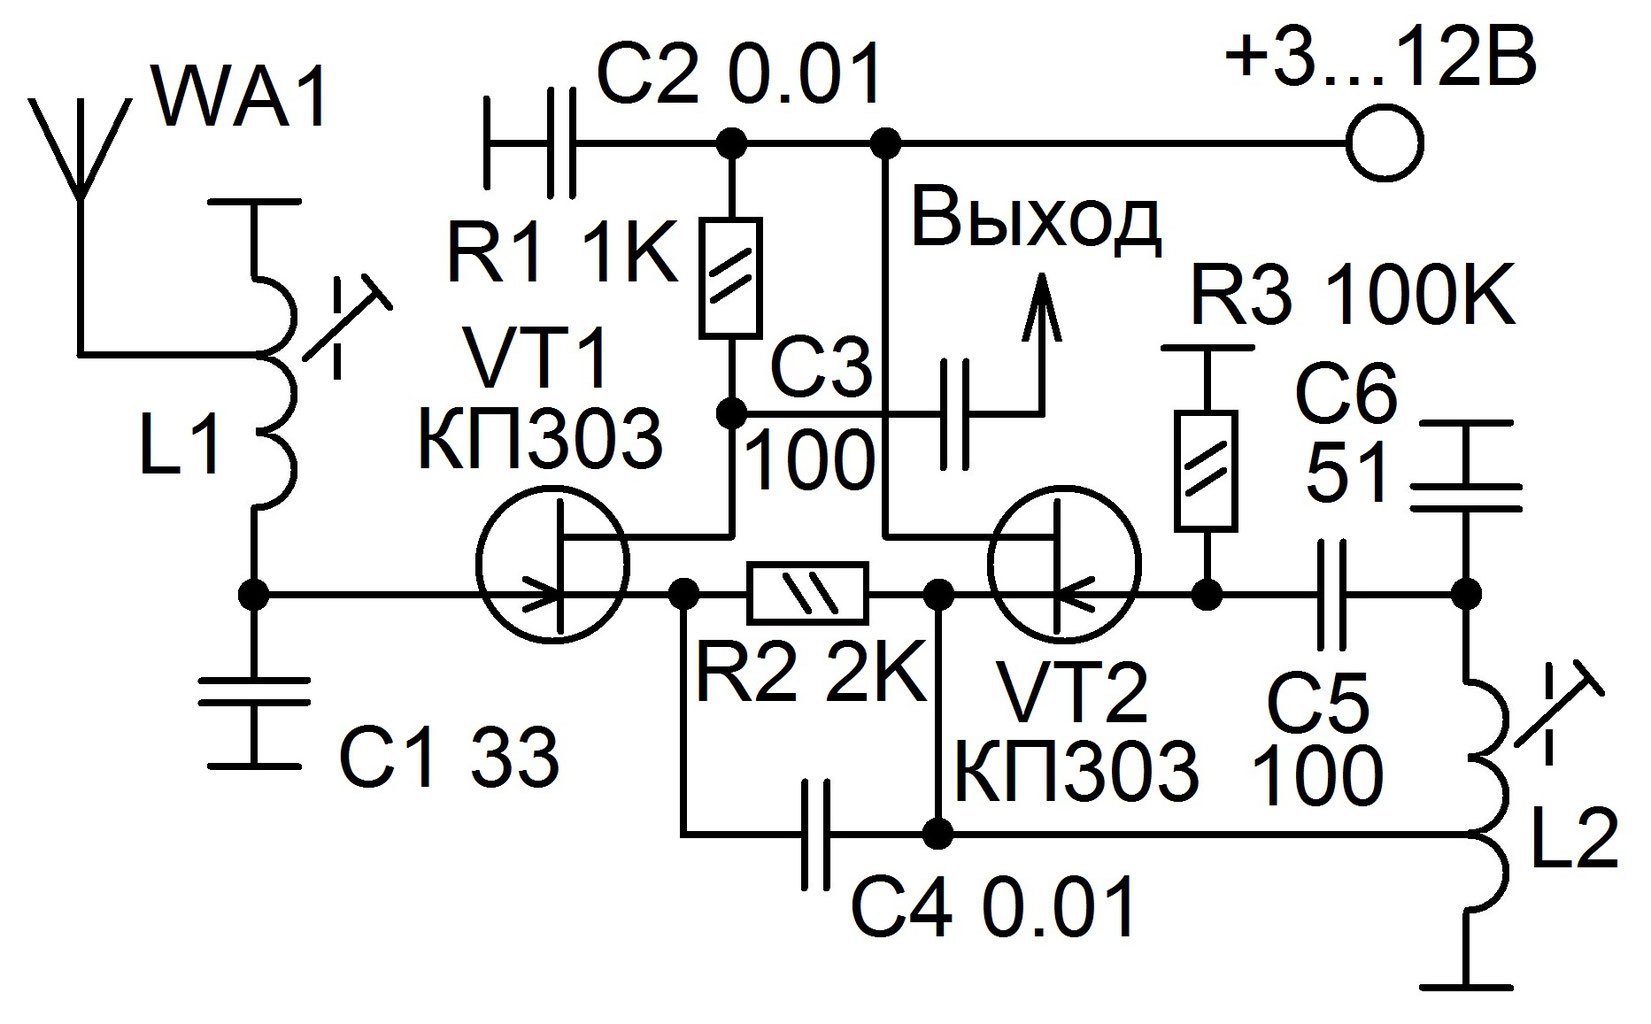 Укв сигнал. Схема УКВ 88-108мгц приемника на транзисторах. Fm радиоприемник на транзисторах 88 108 МГЦ. Схема приемника прямого усиления на 27 МГЦ. Схема конвертера УКВ fm на транзисторах.